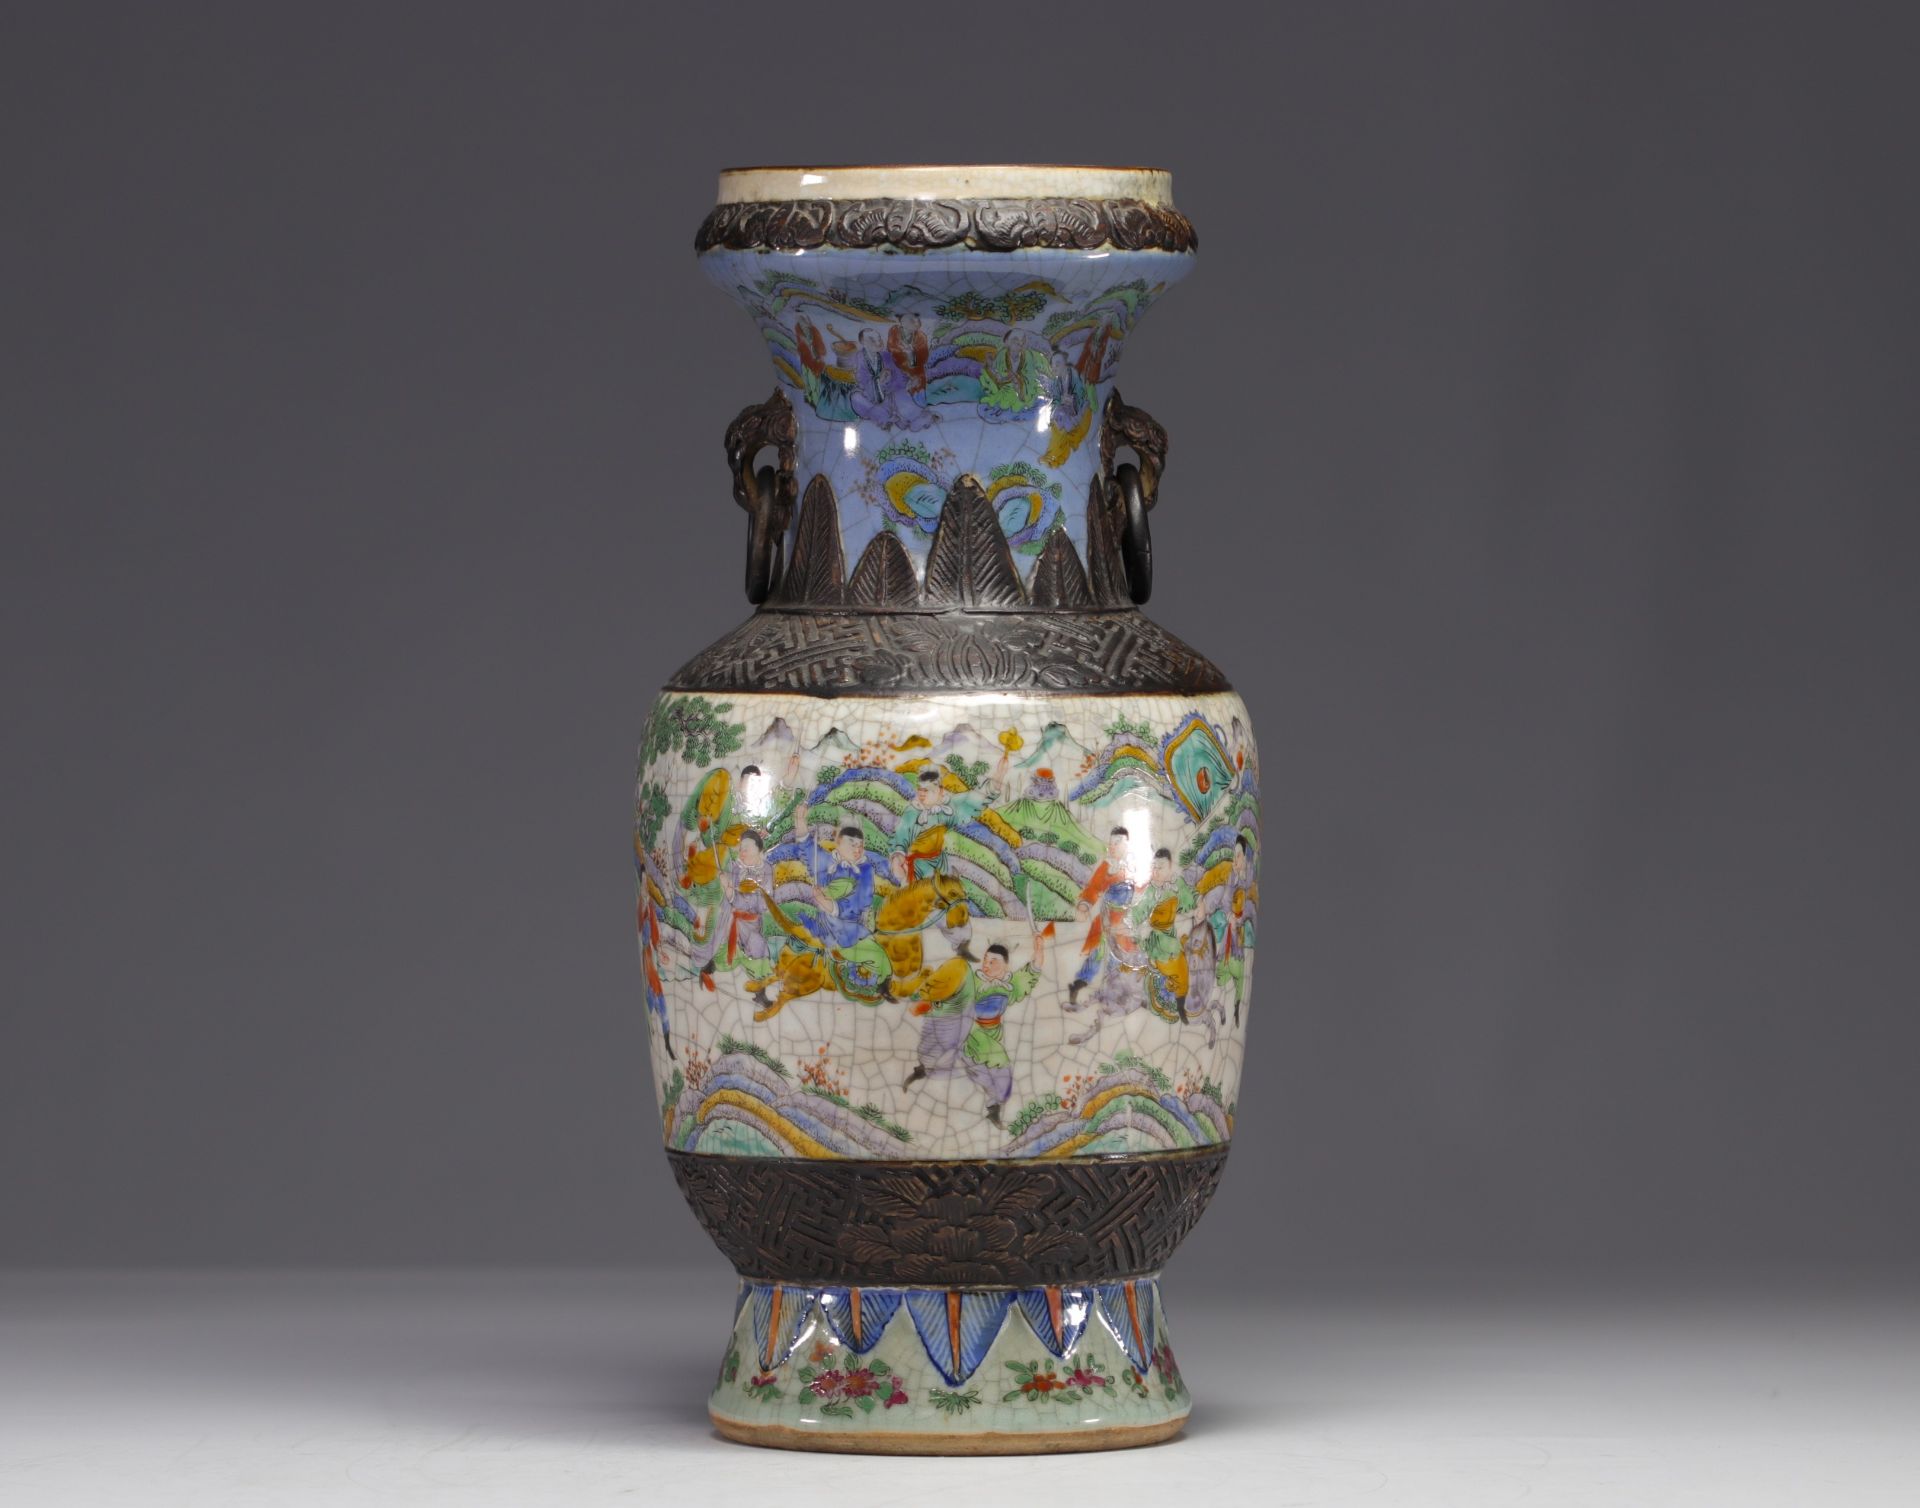 China - Nanking porcelain vase with battle scene decoration, 19th century. - Image 4 of 6